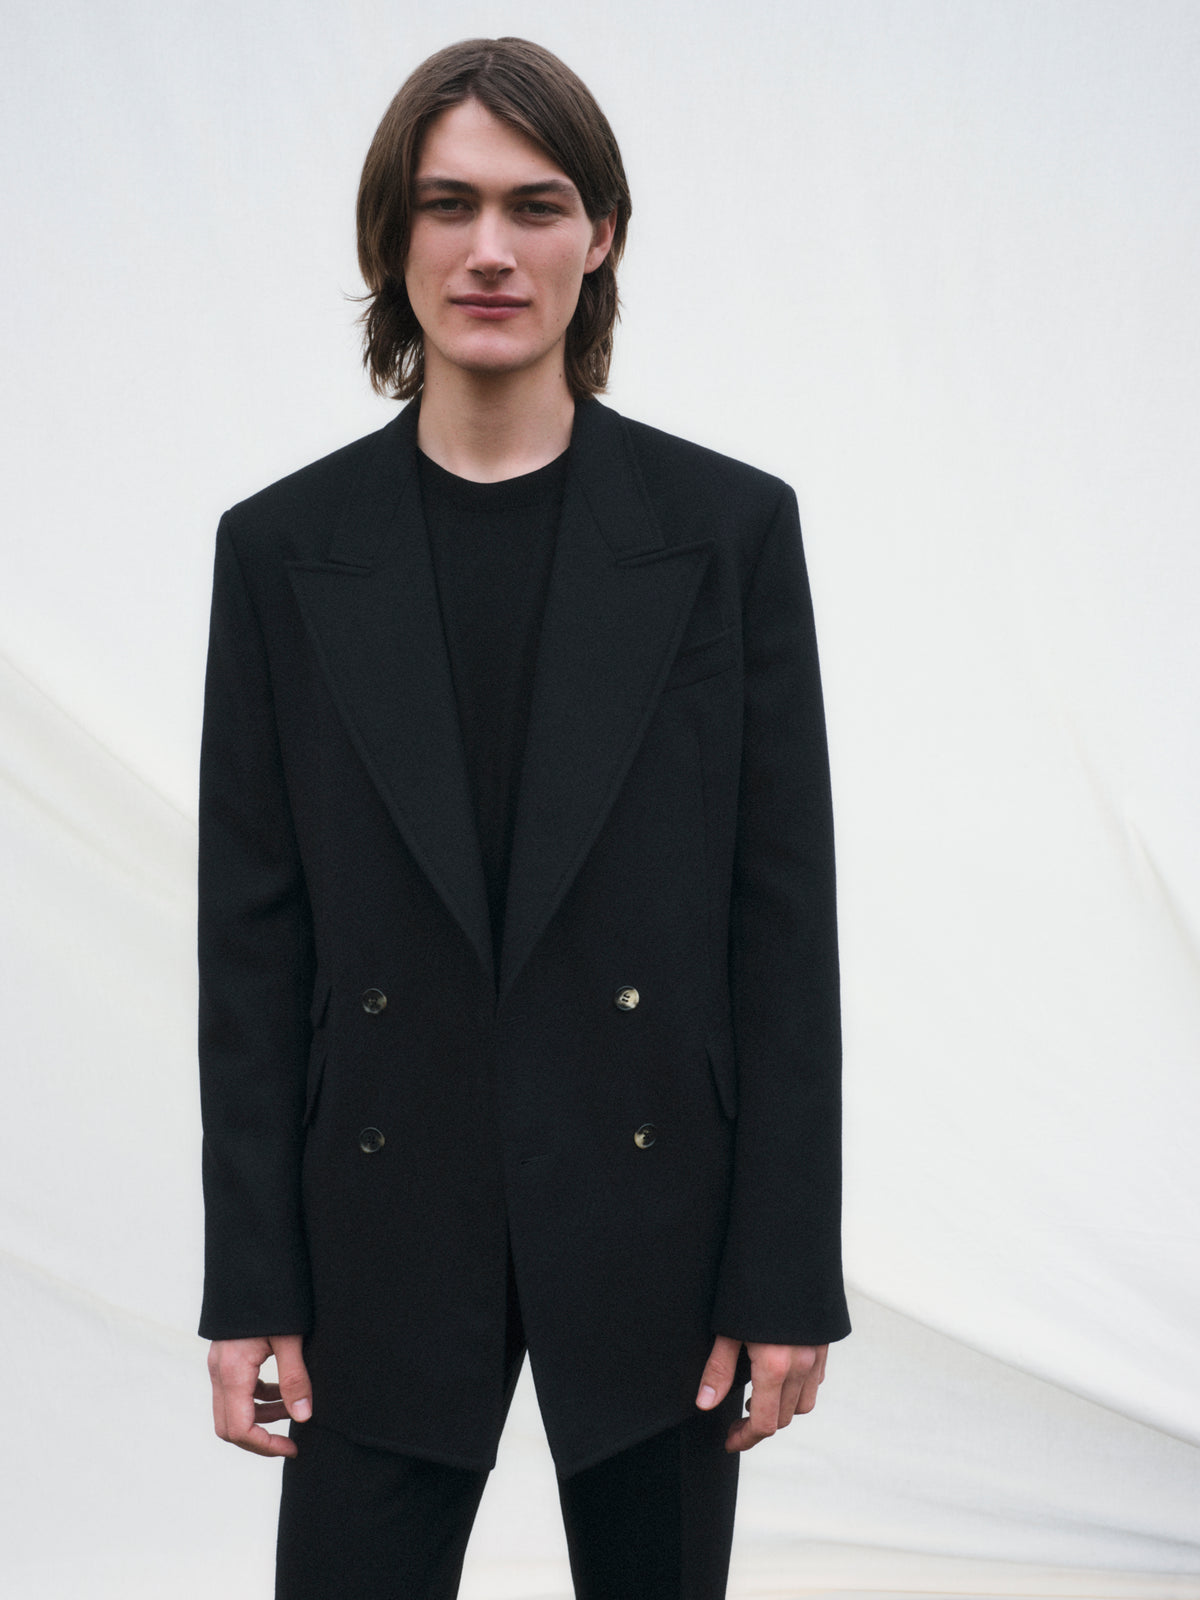 Sebastian Pant in Black Wool